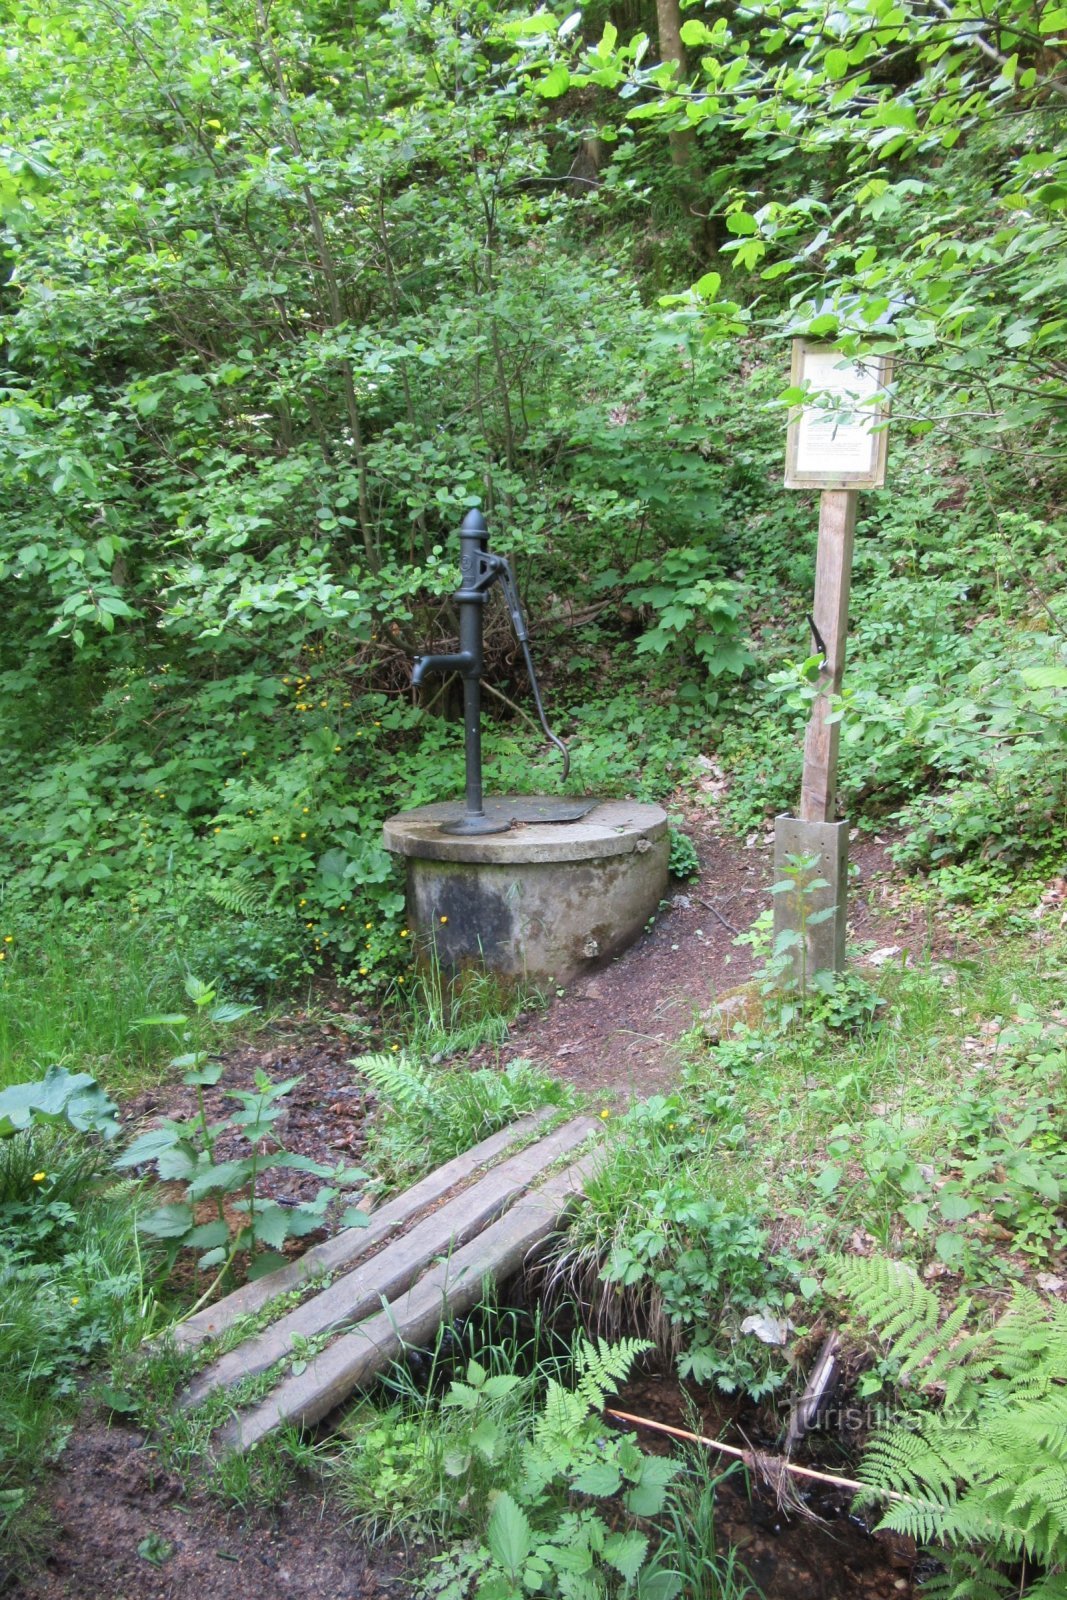 The well at Potomských